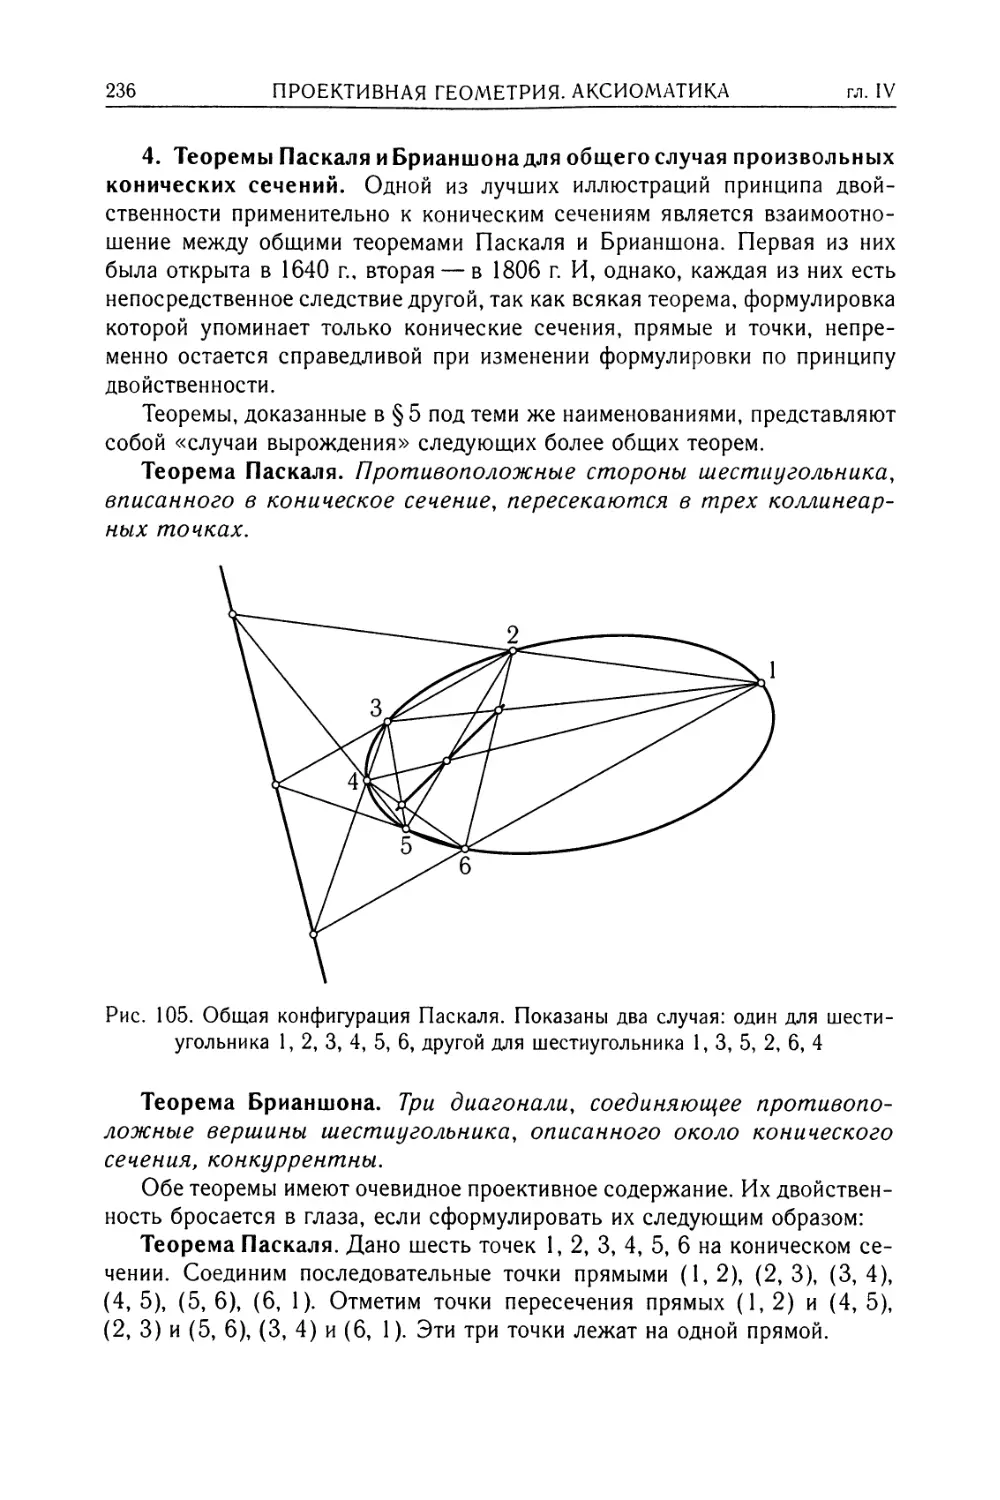 4. Теоремы Паскаля и Брианшона для общего случая произвольных конических сечений